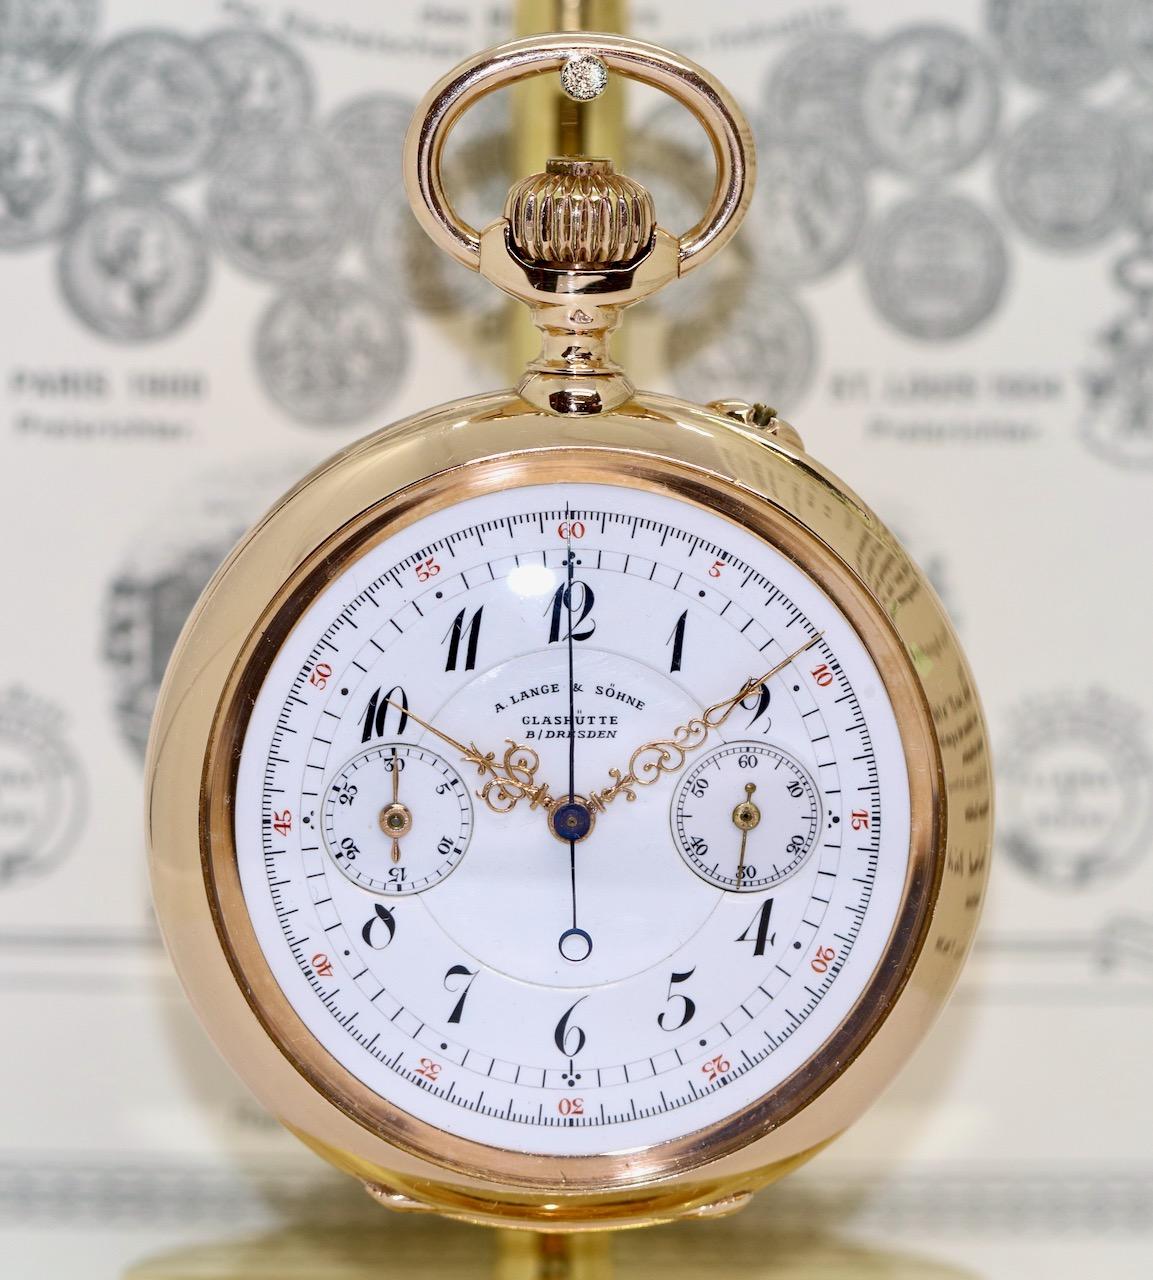 Diese exquisite und seltene Taschenuhr von A. Lange & Söhne stellt eine außergewöhnliche Kombination aus historischer Handwerkskunst und zeitloser Eleganz dar. Sie wurde um 1898 hergestellt und verkörpert die hohe Kunst der sächsischen